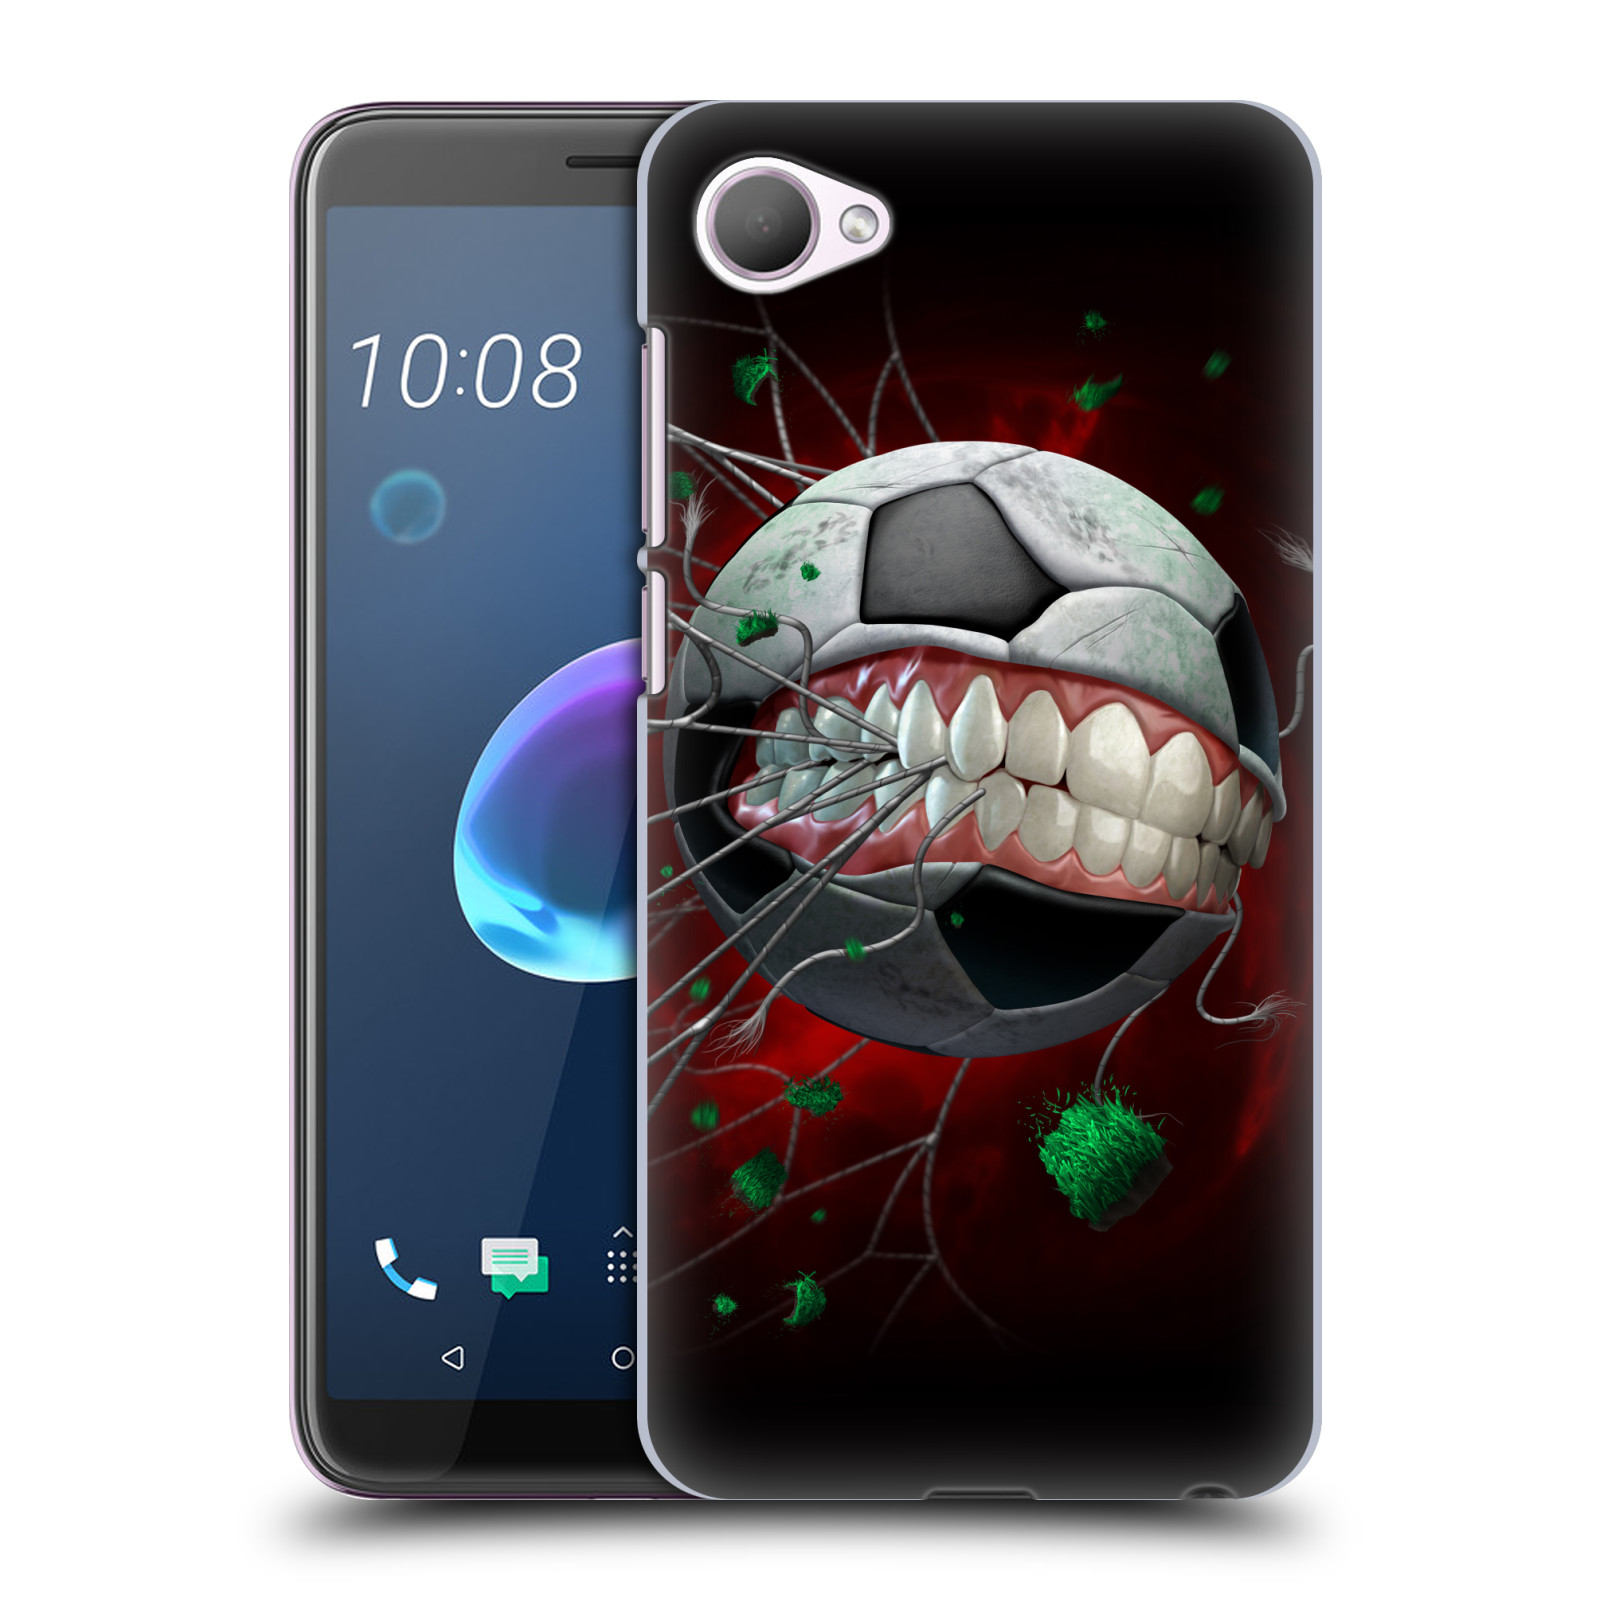 Pouzdro na mobil HTC Desire 12 / Desire 12 DUAL SIM - HEAD CASE - Fantasy kresby Tom Wood - Fotbal